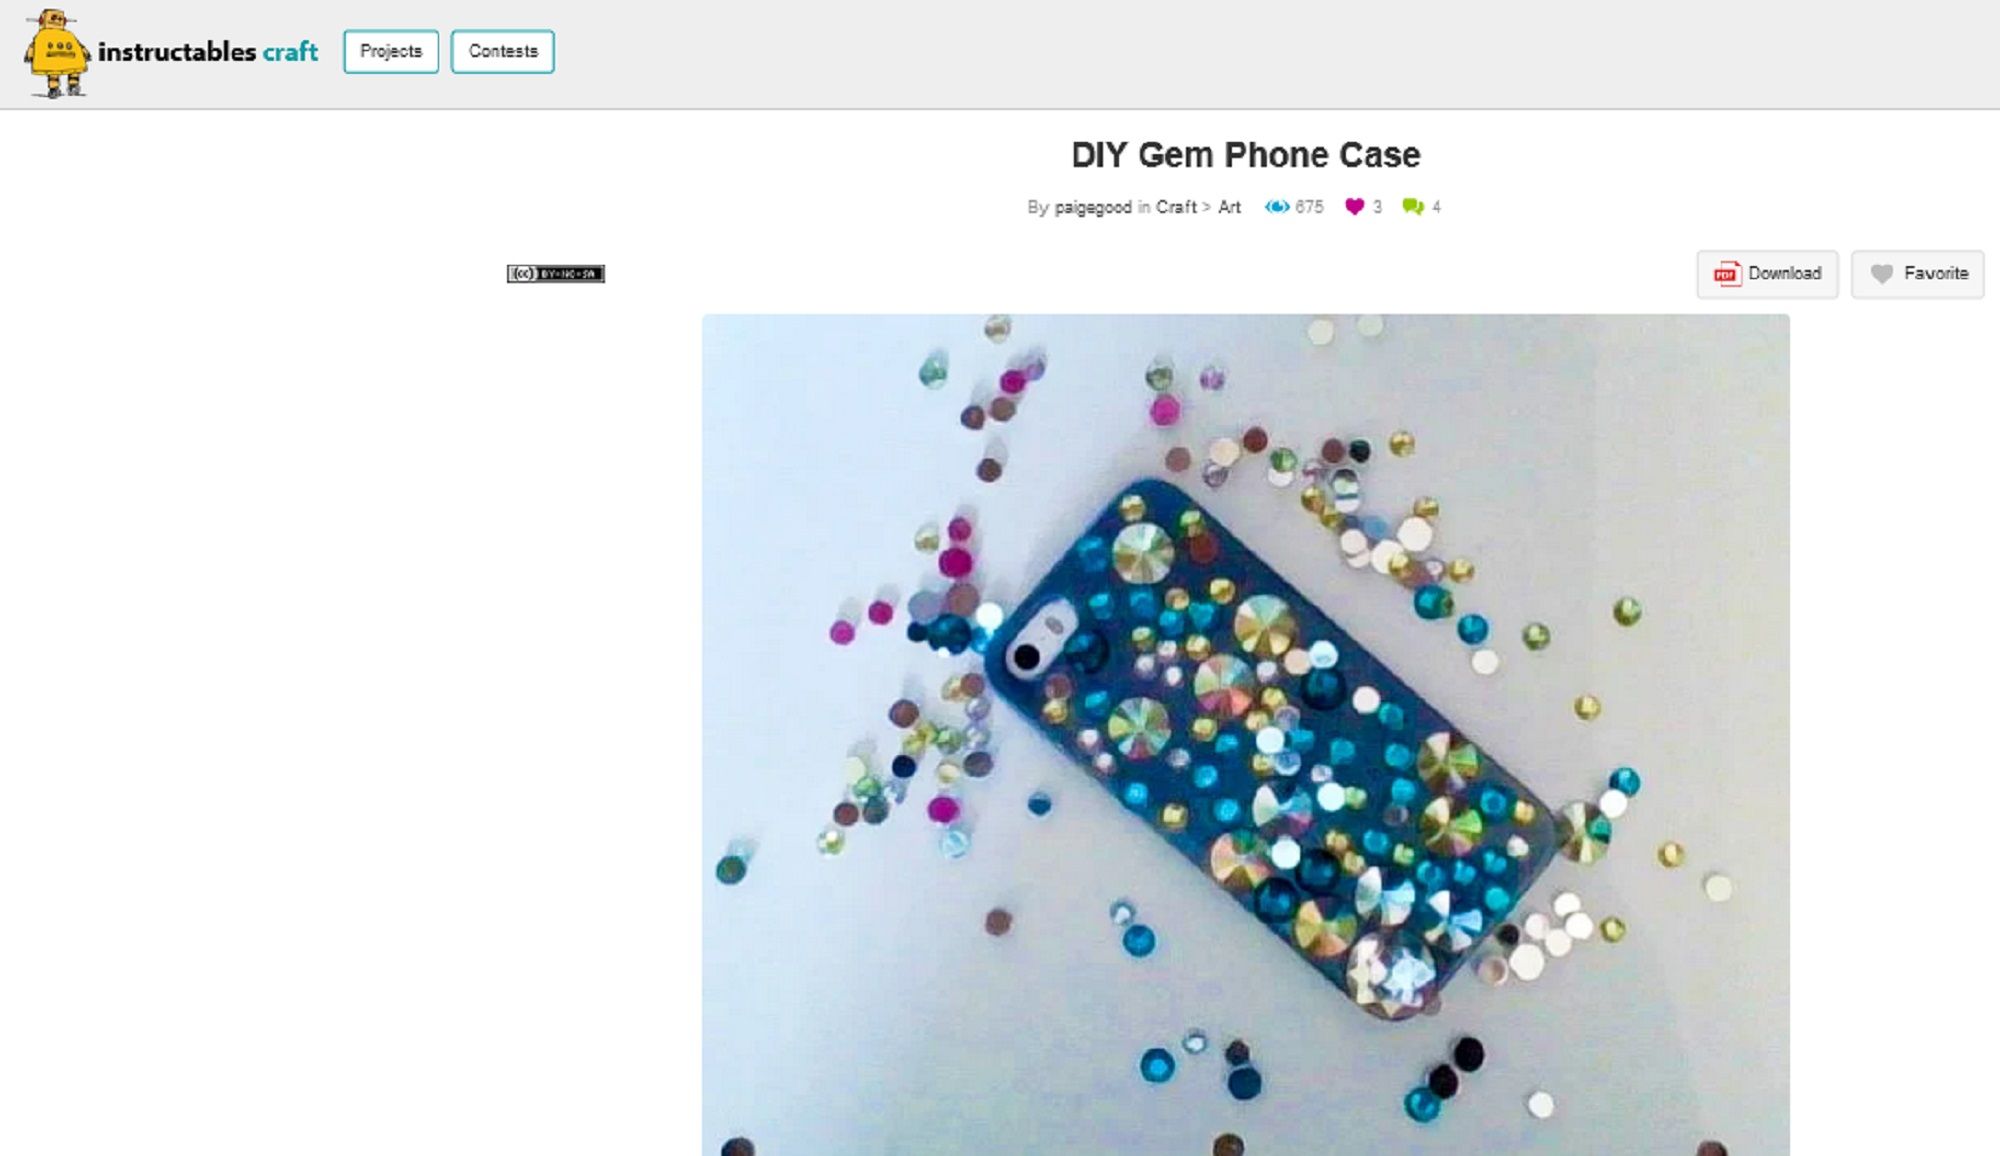 Screengrab of DIY Gem Phone Case